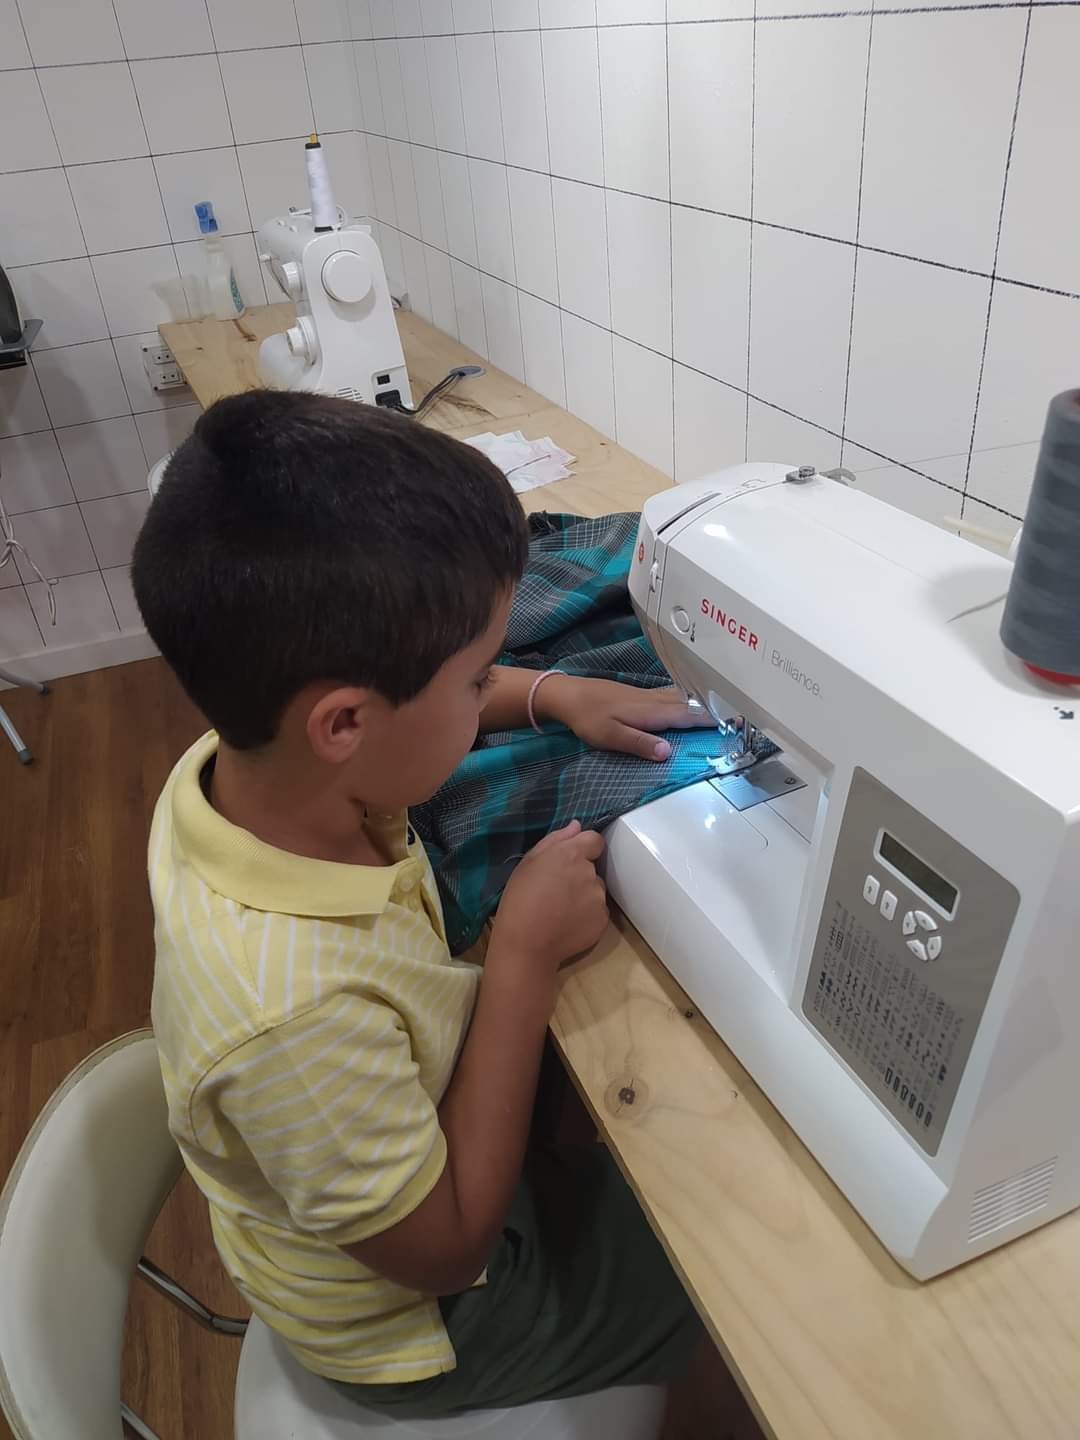 Un maestro de la costura con 8 años